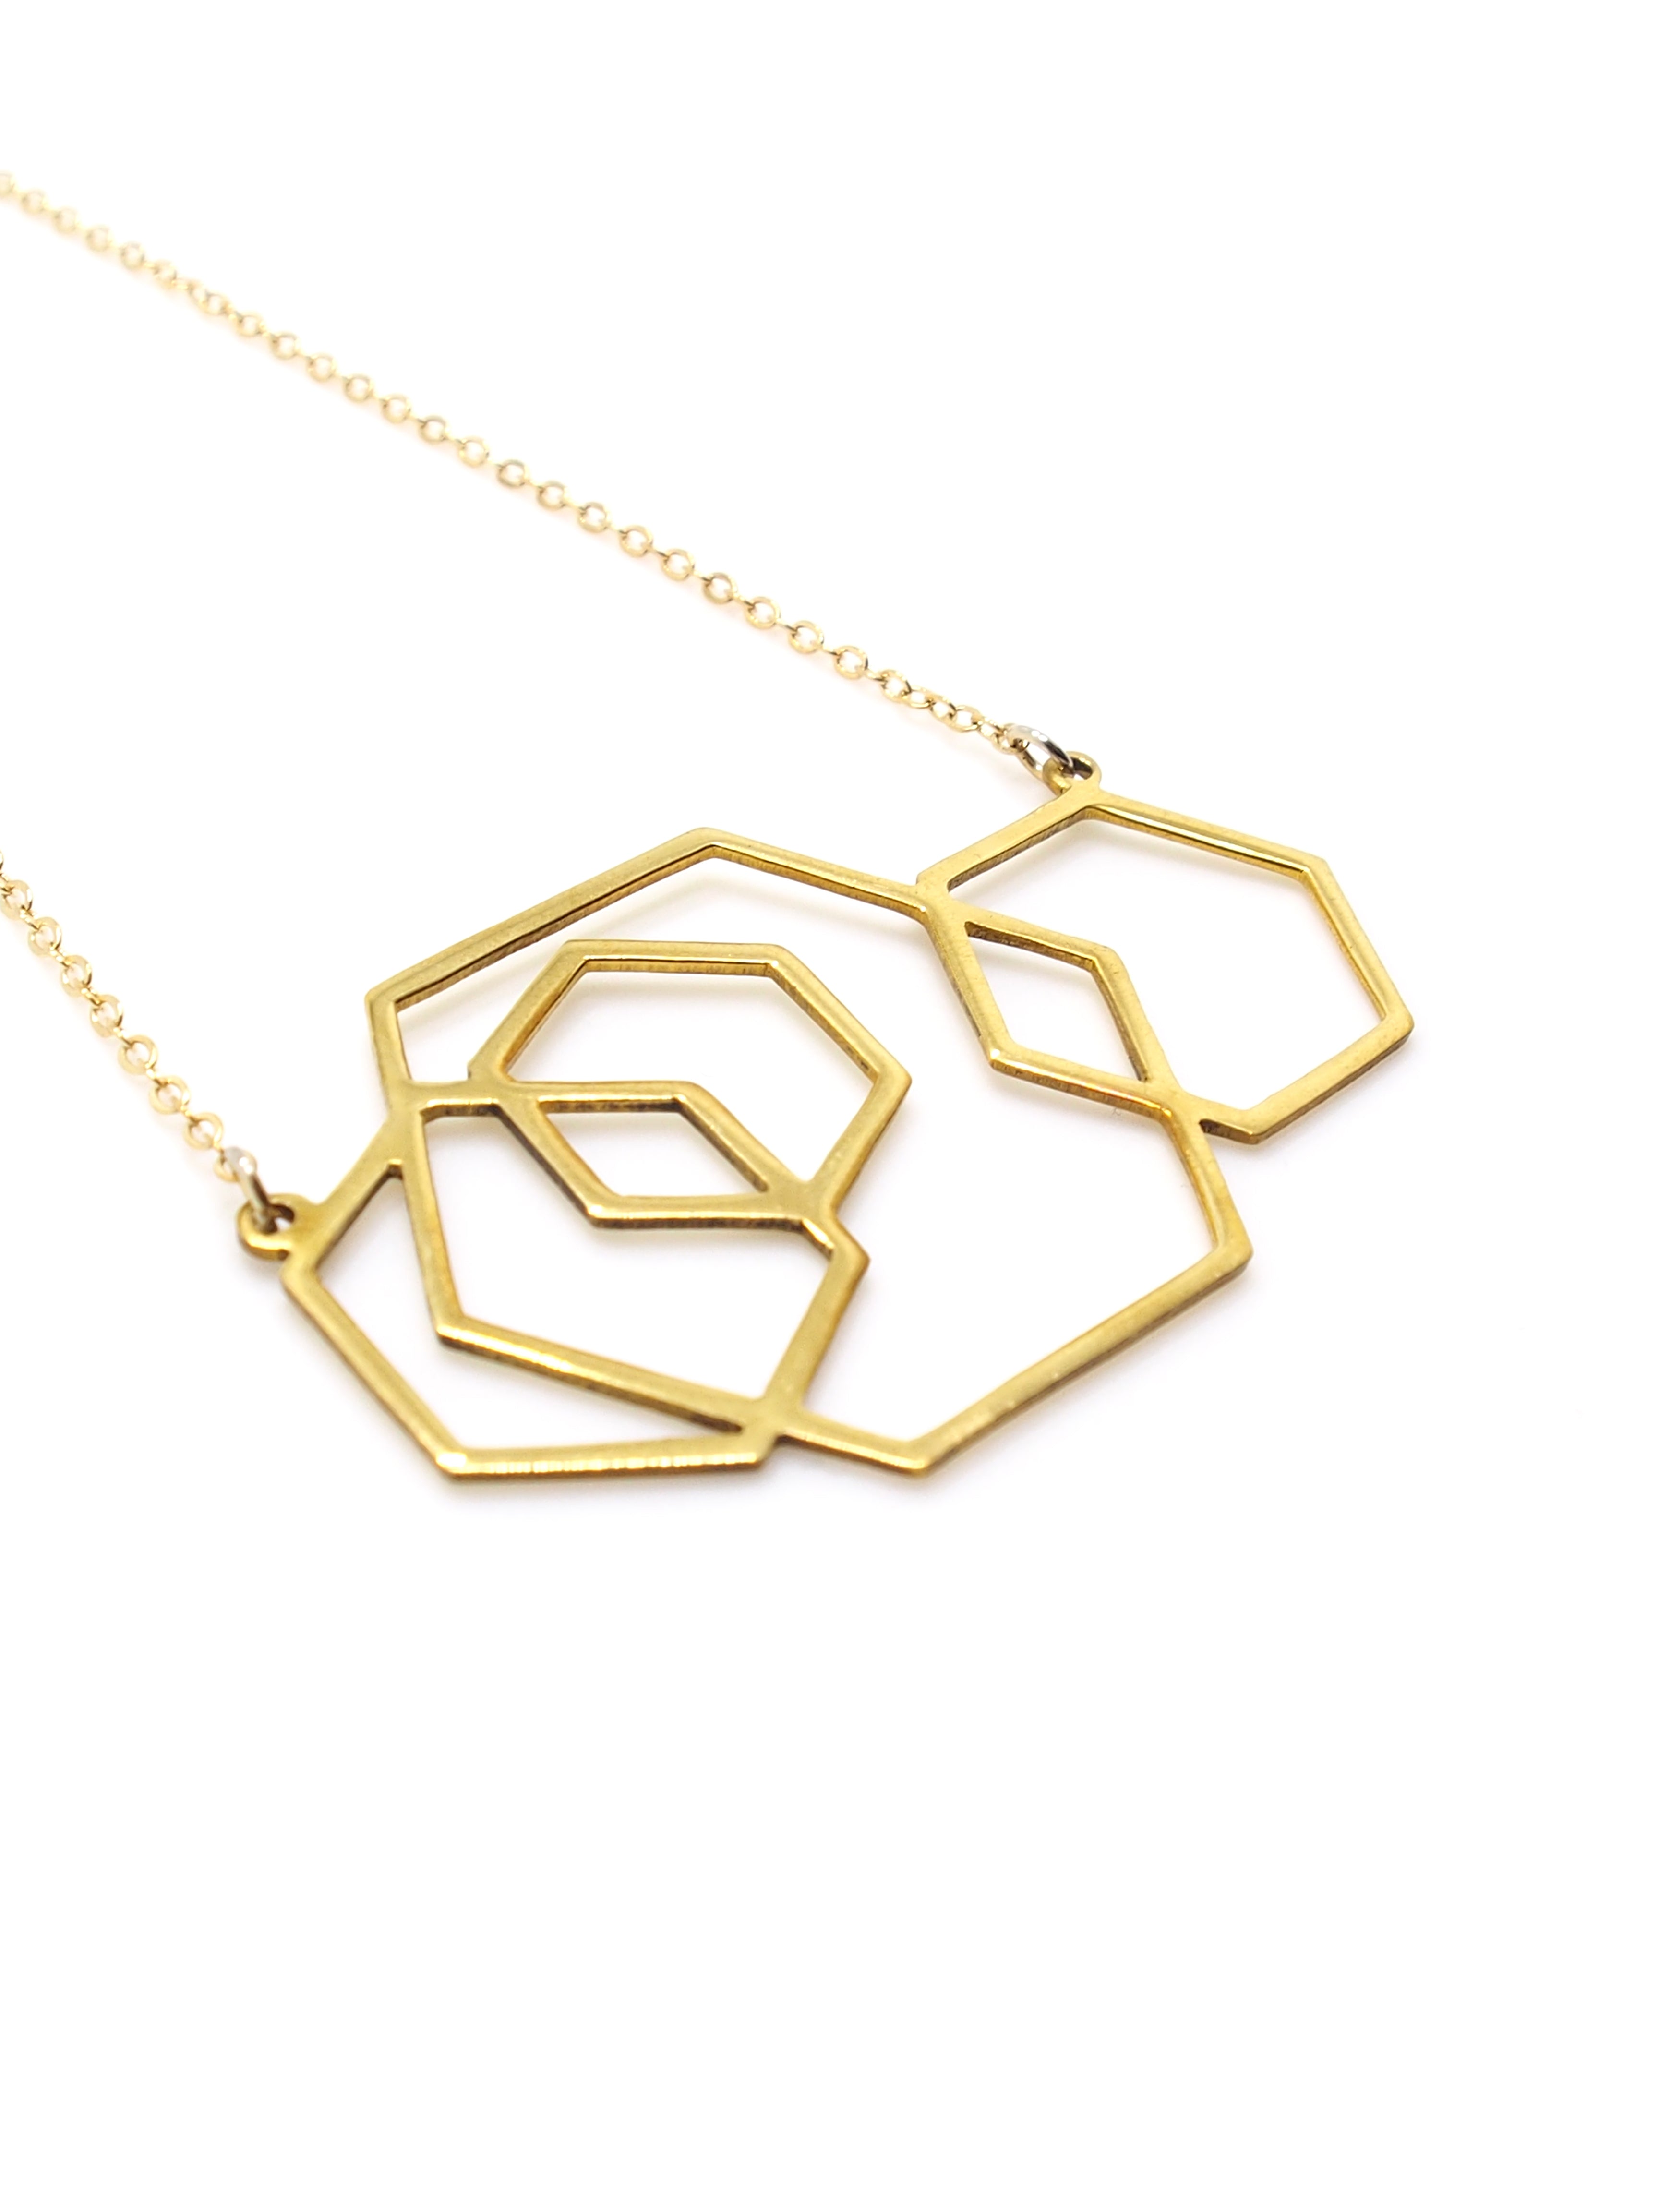 Hansel & Smith - Hexagons Necklace